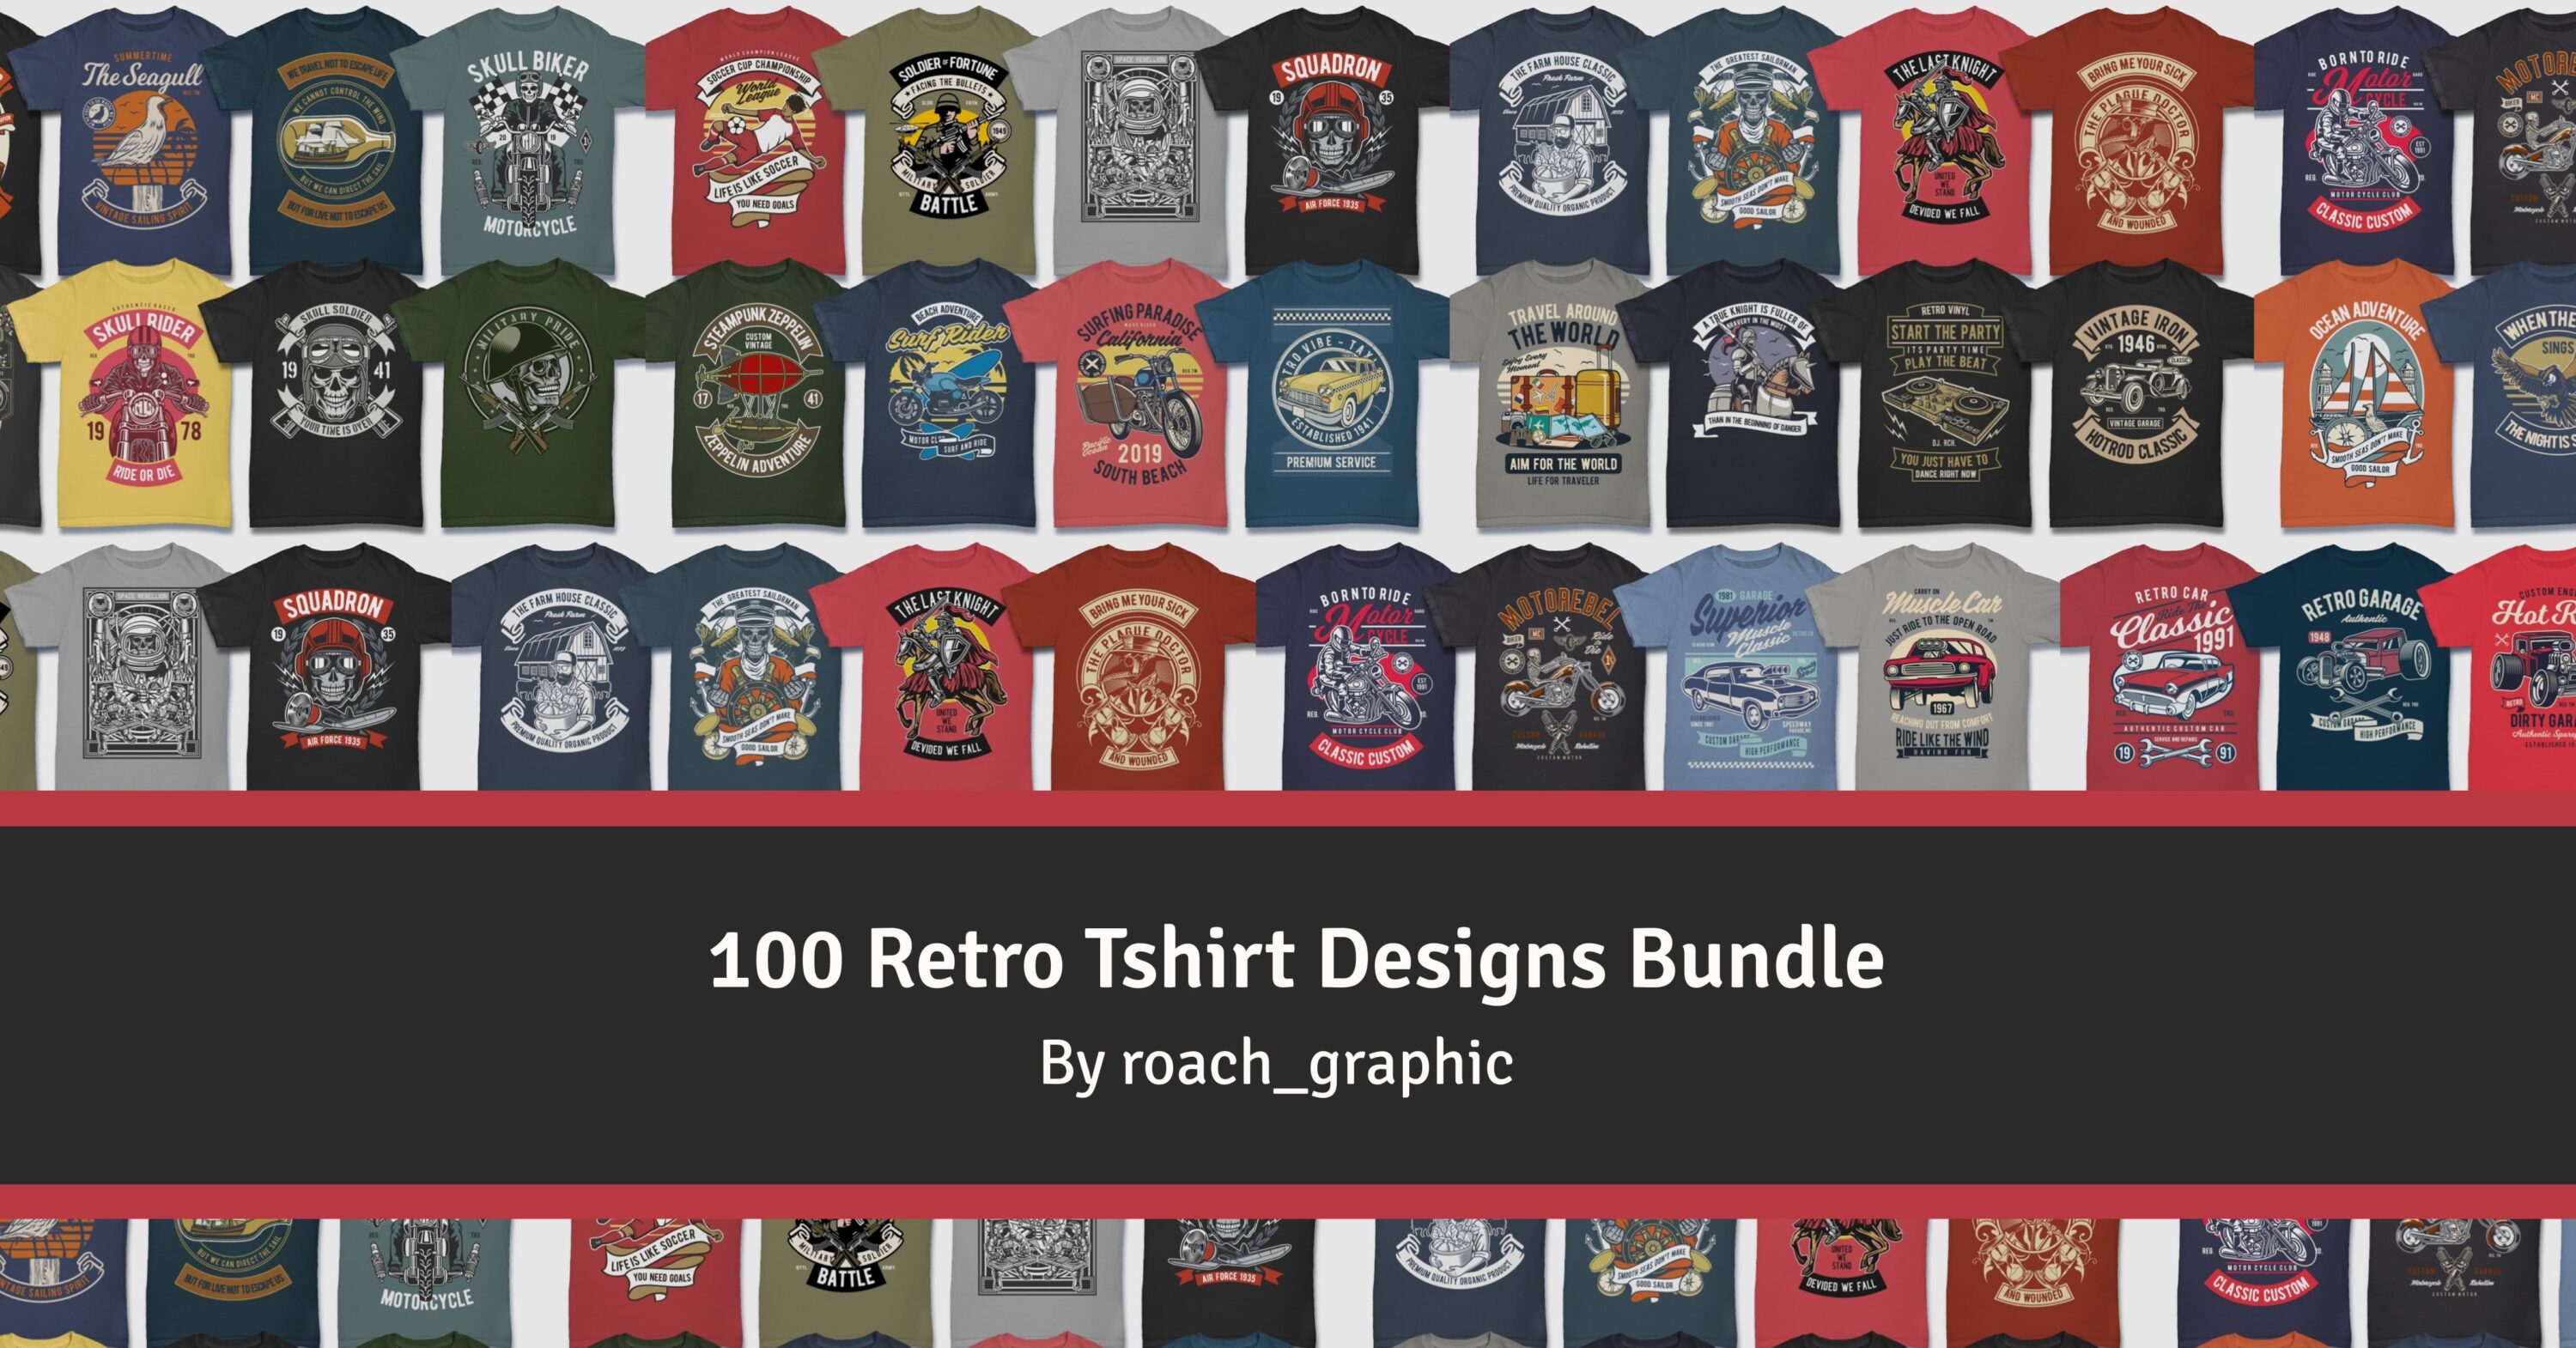 100 Retro Tshirt Designs Bundle facebook image.